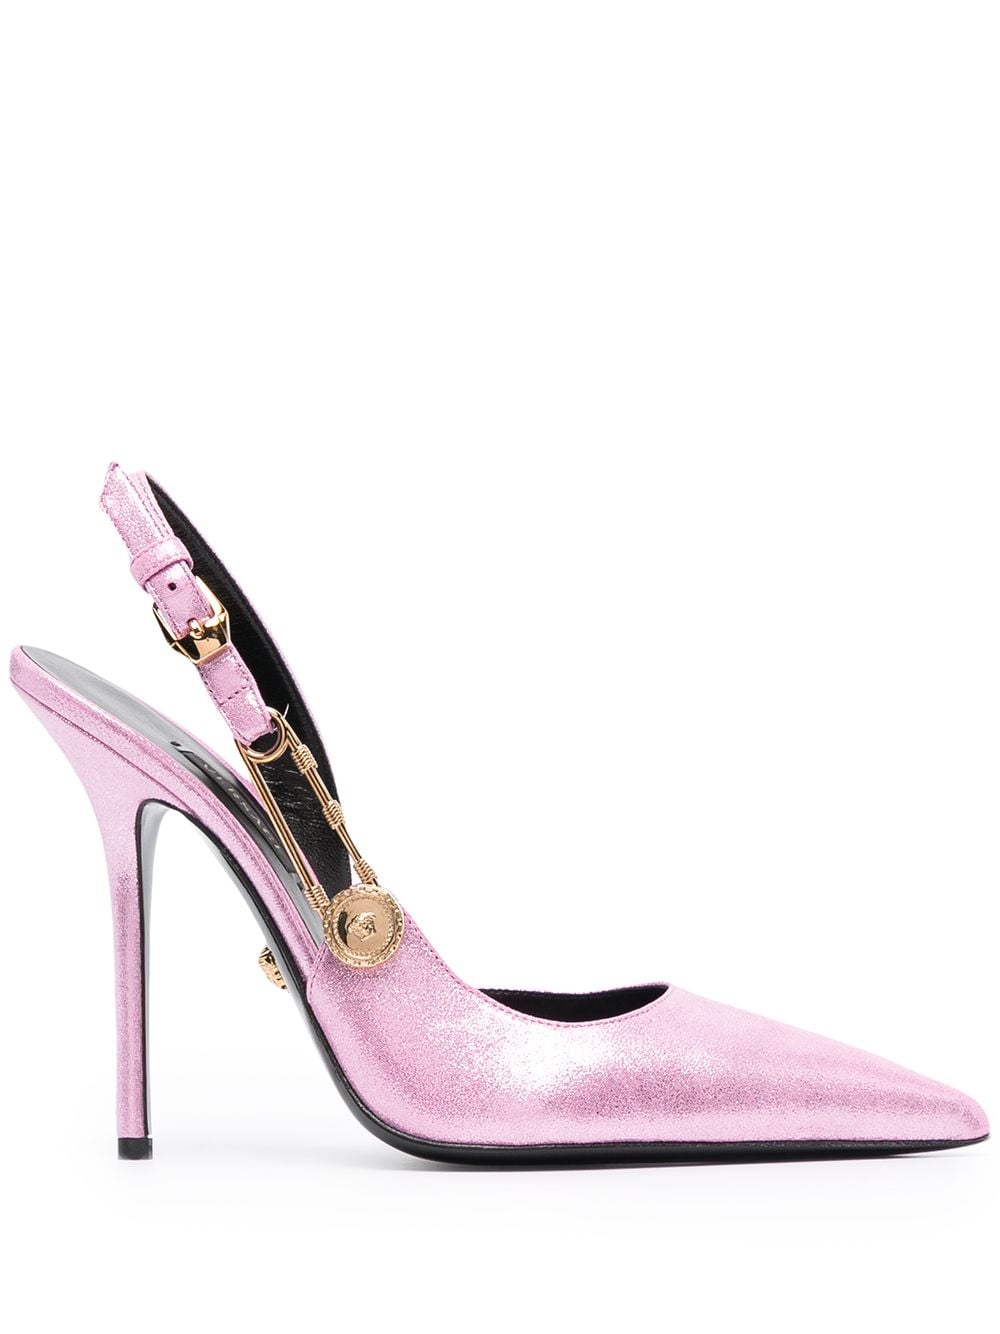 фото Versace туфли с эффектом металлик